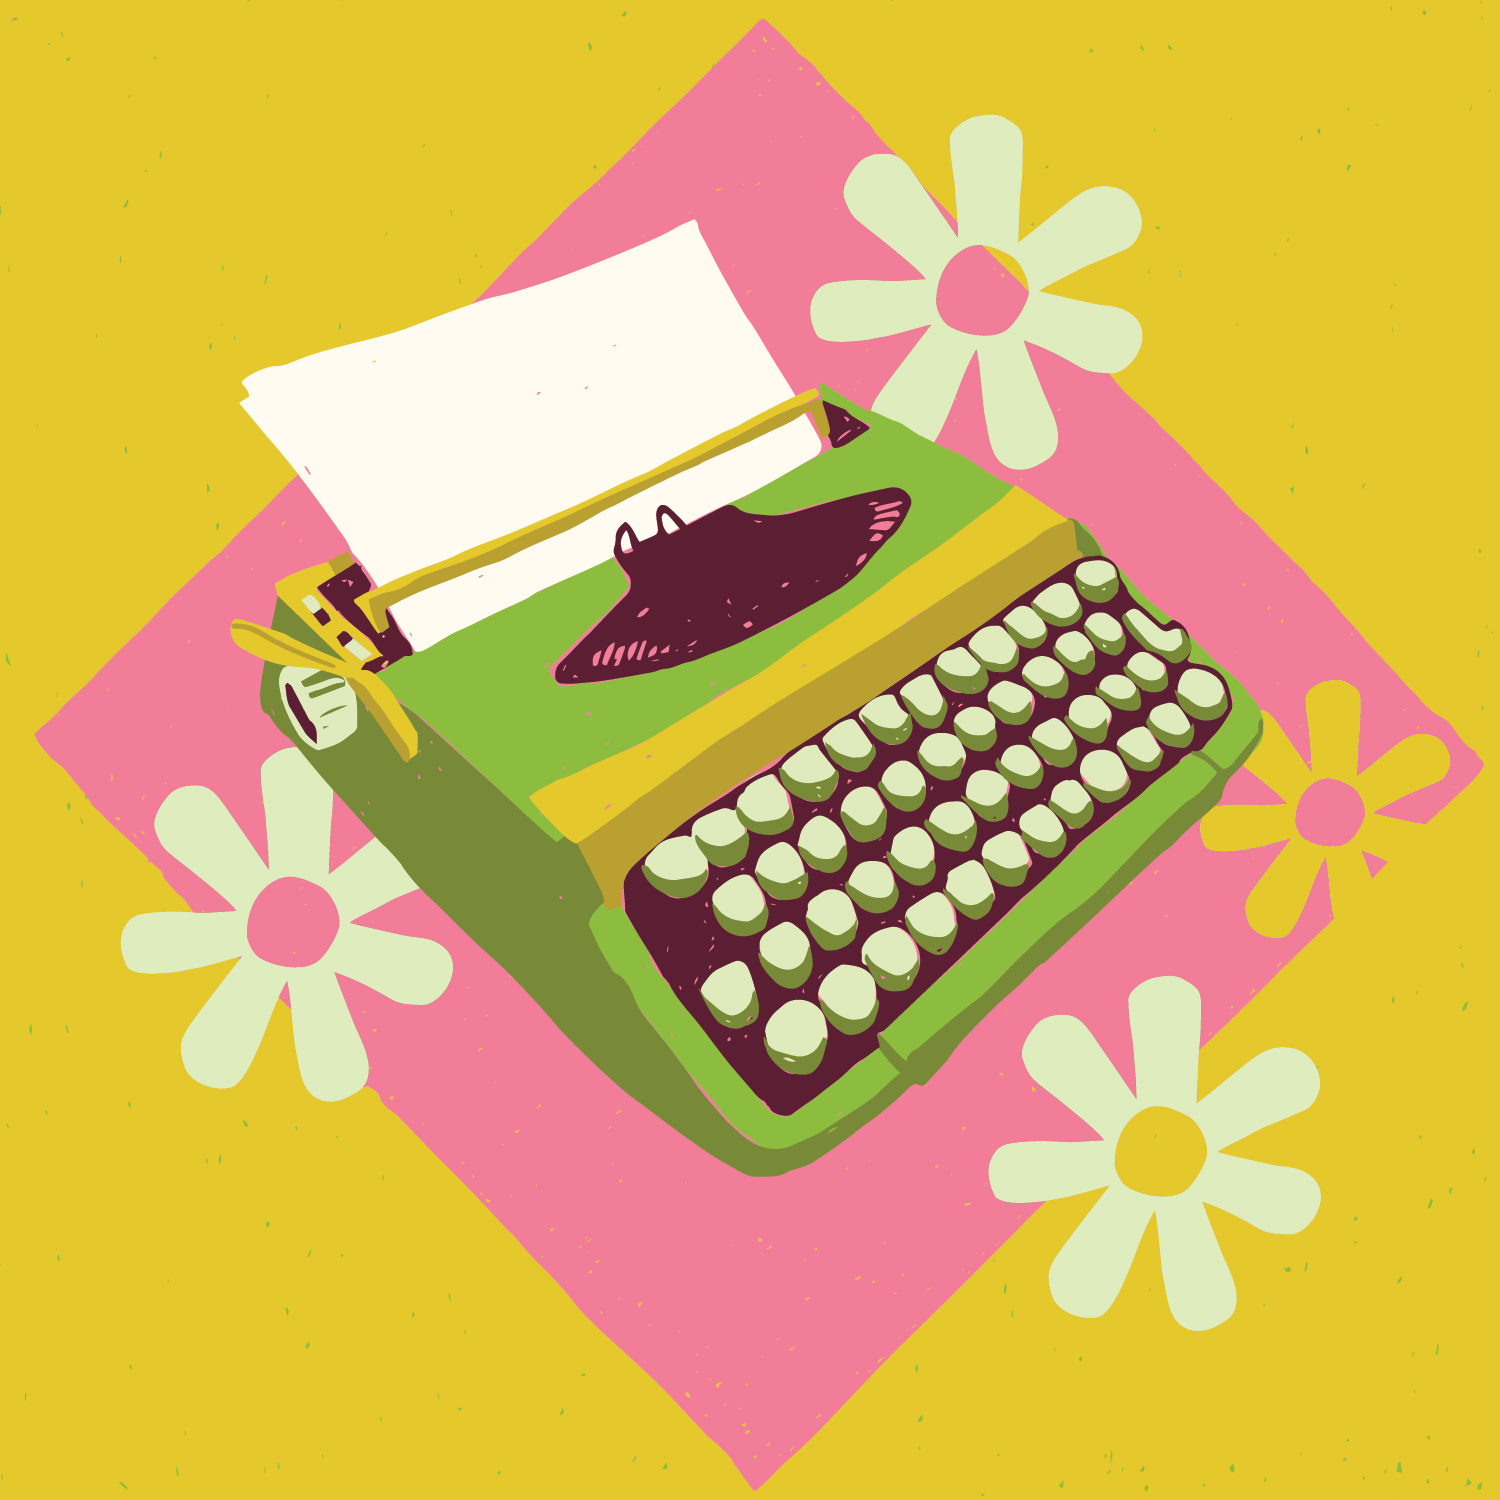 21_3 quarter GREEN typewriter_illustration-01.png